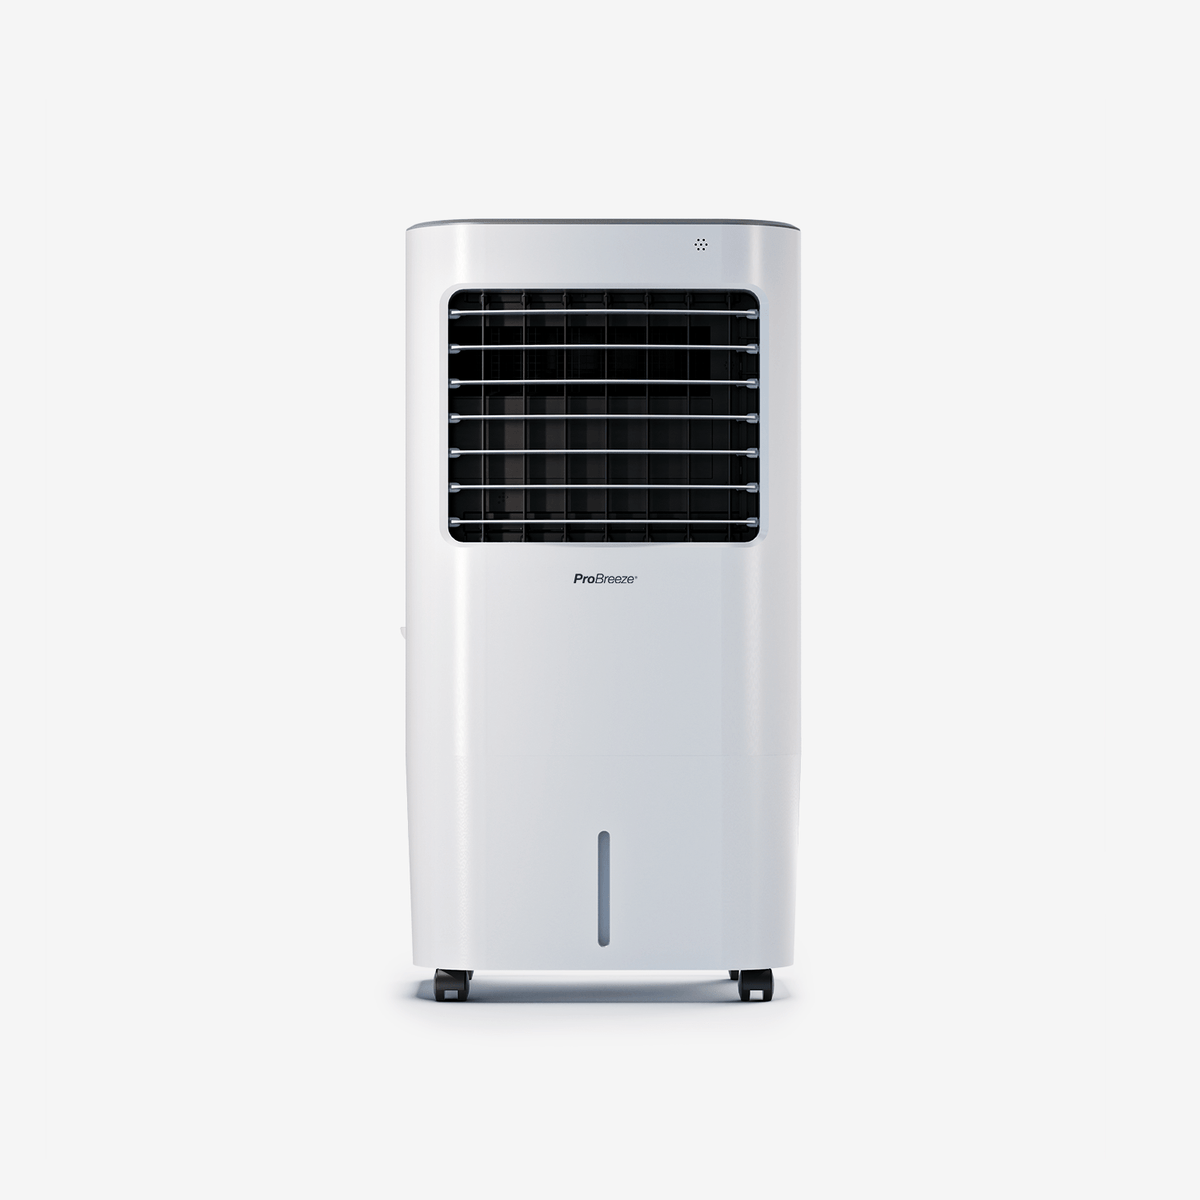 Resfriador de ar portátil de 10 L com 4 modos operacionais, 3 velocidades do ventilador, display LED e controle remoto